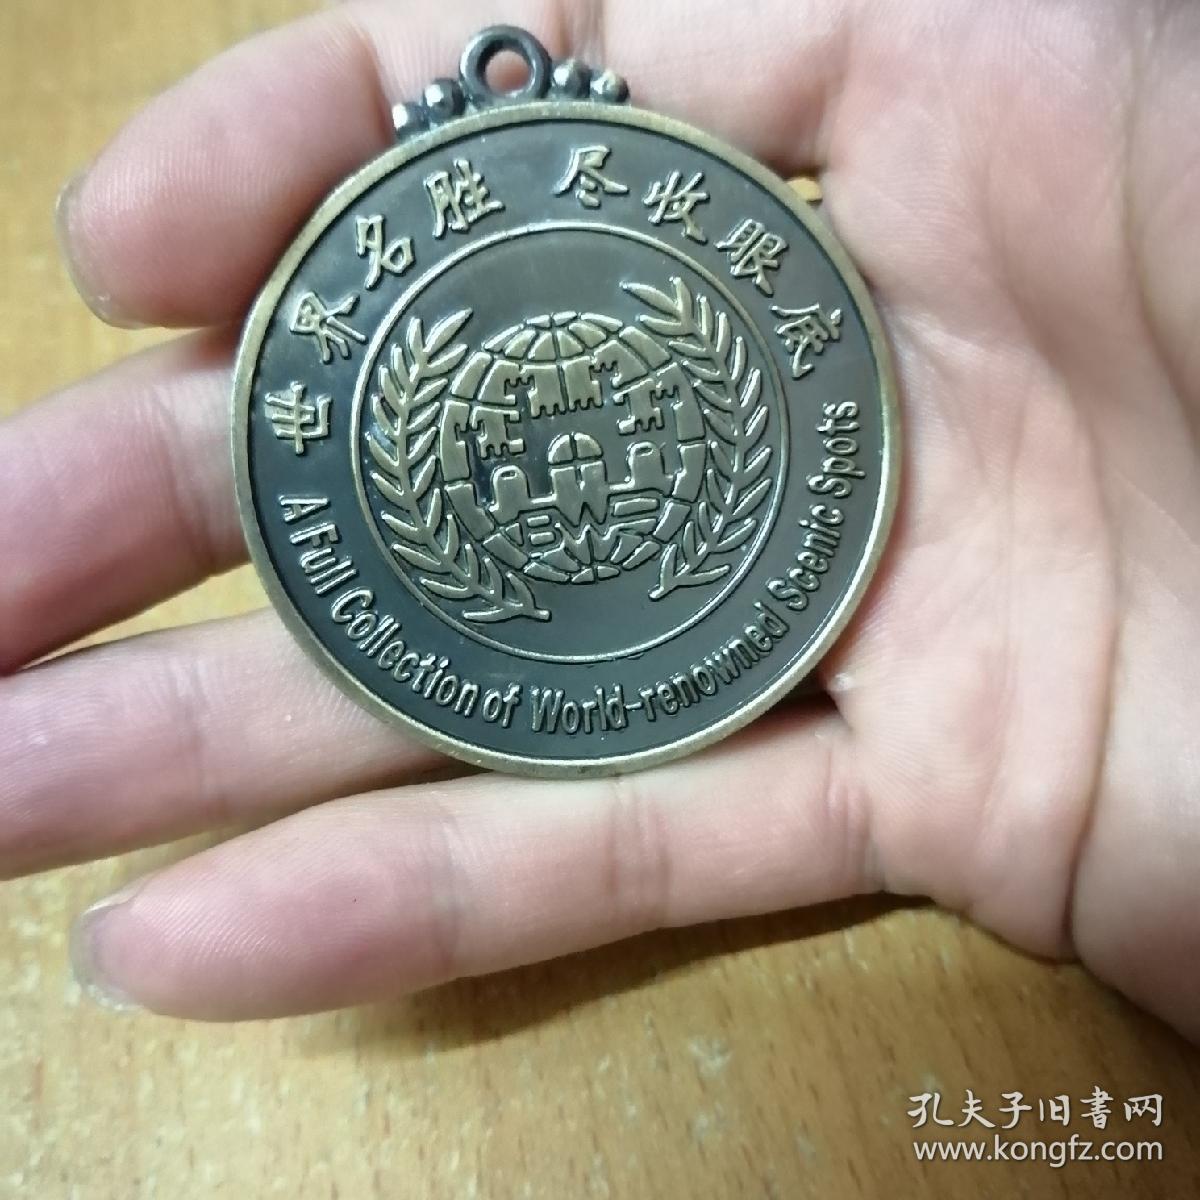 北京世界公园铜纪念牌